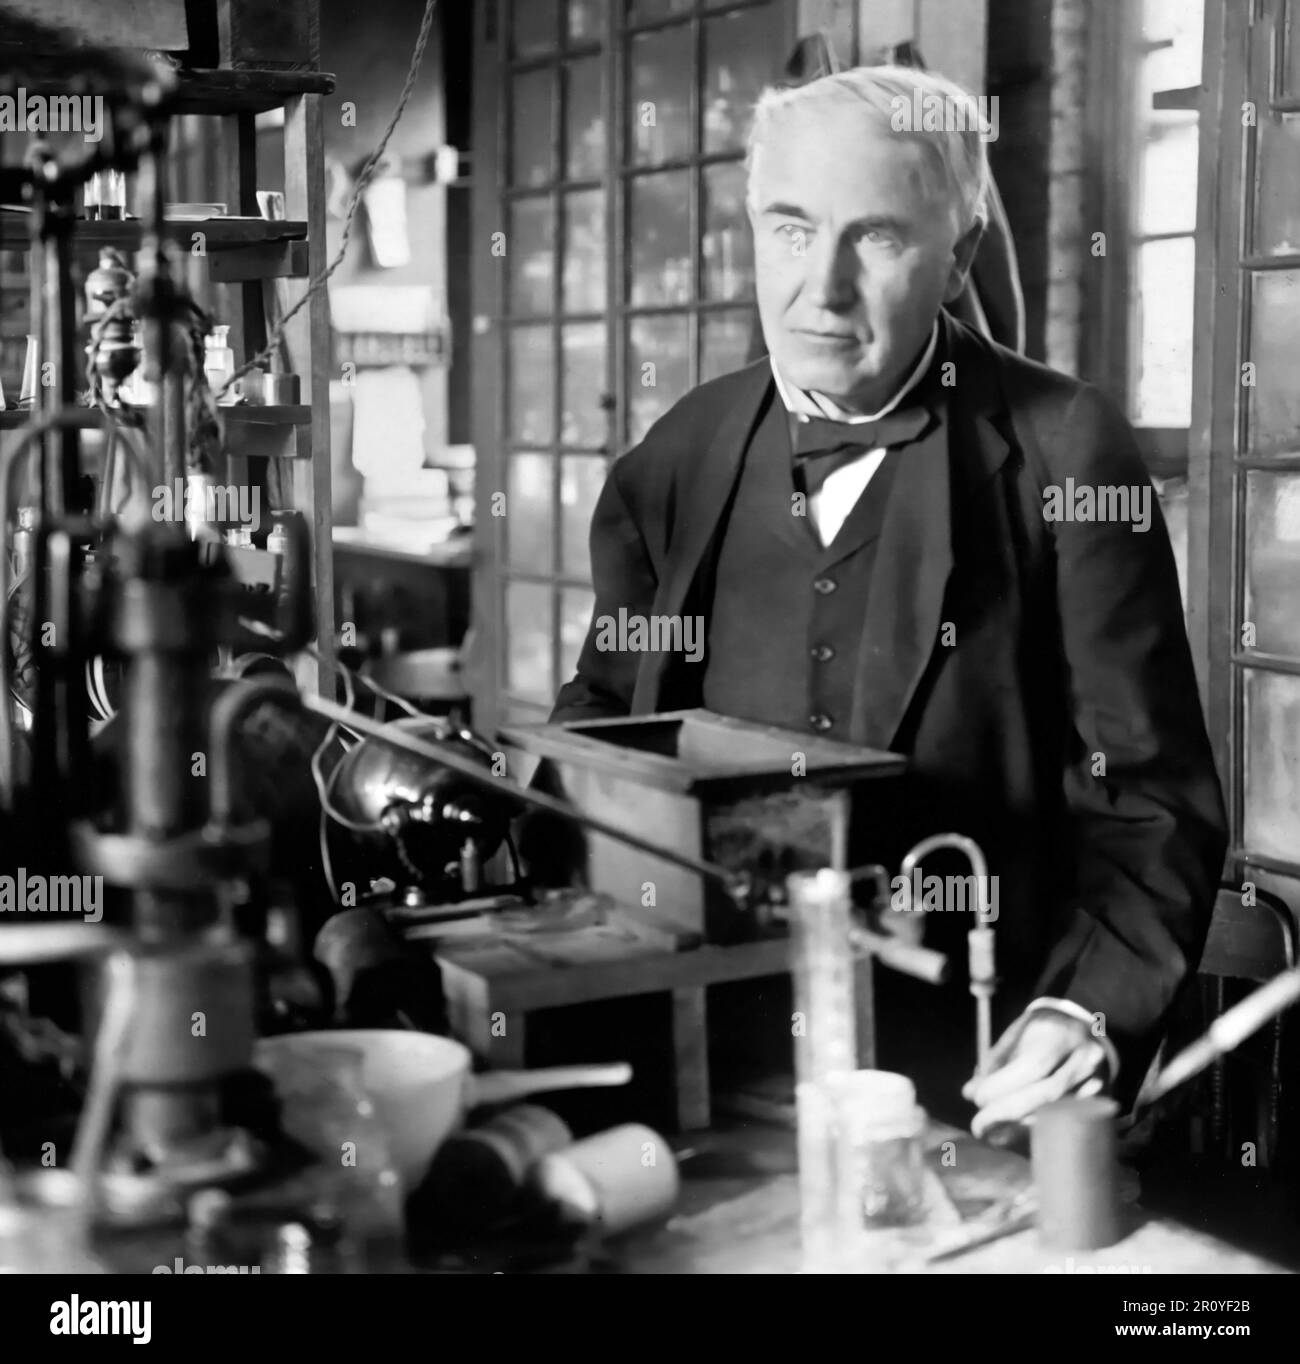 Thomas Edison. L'inventeur et homme d'affaires américain, Thomas Alva Edison (1847-1931), dans son laboratoire. Portrait, c. 1915 Banque D'Images